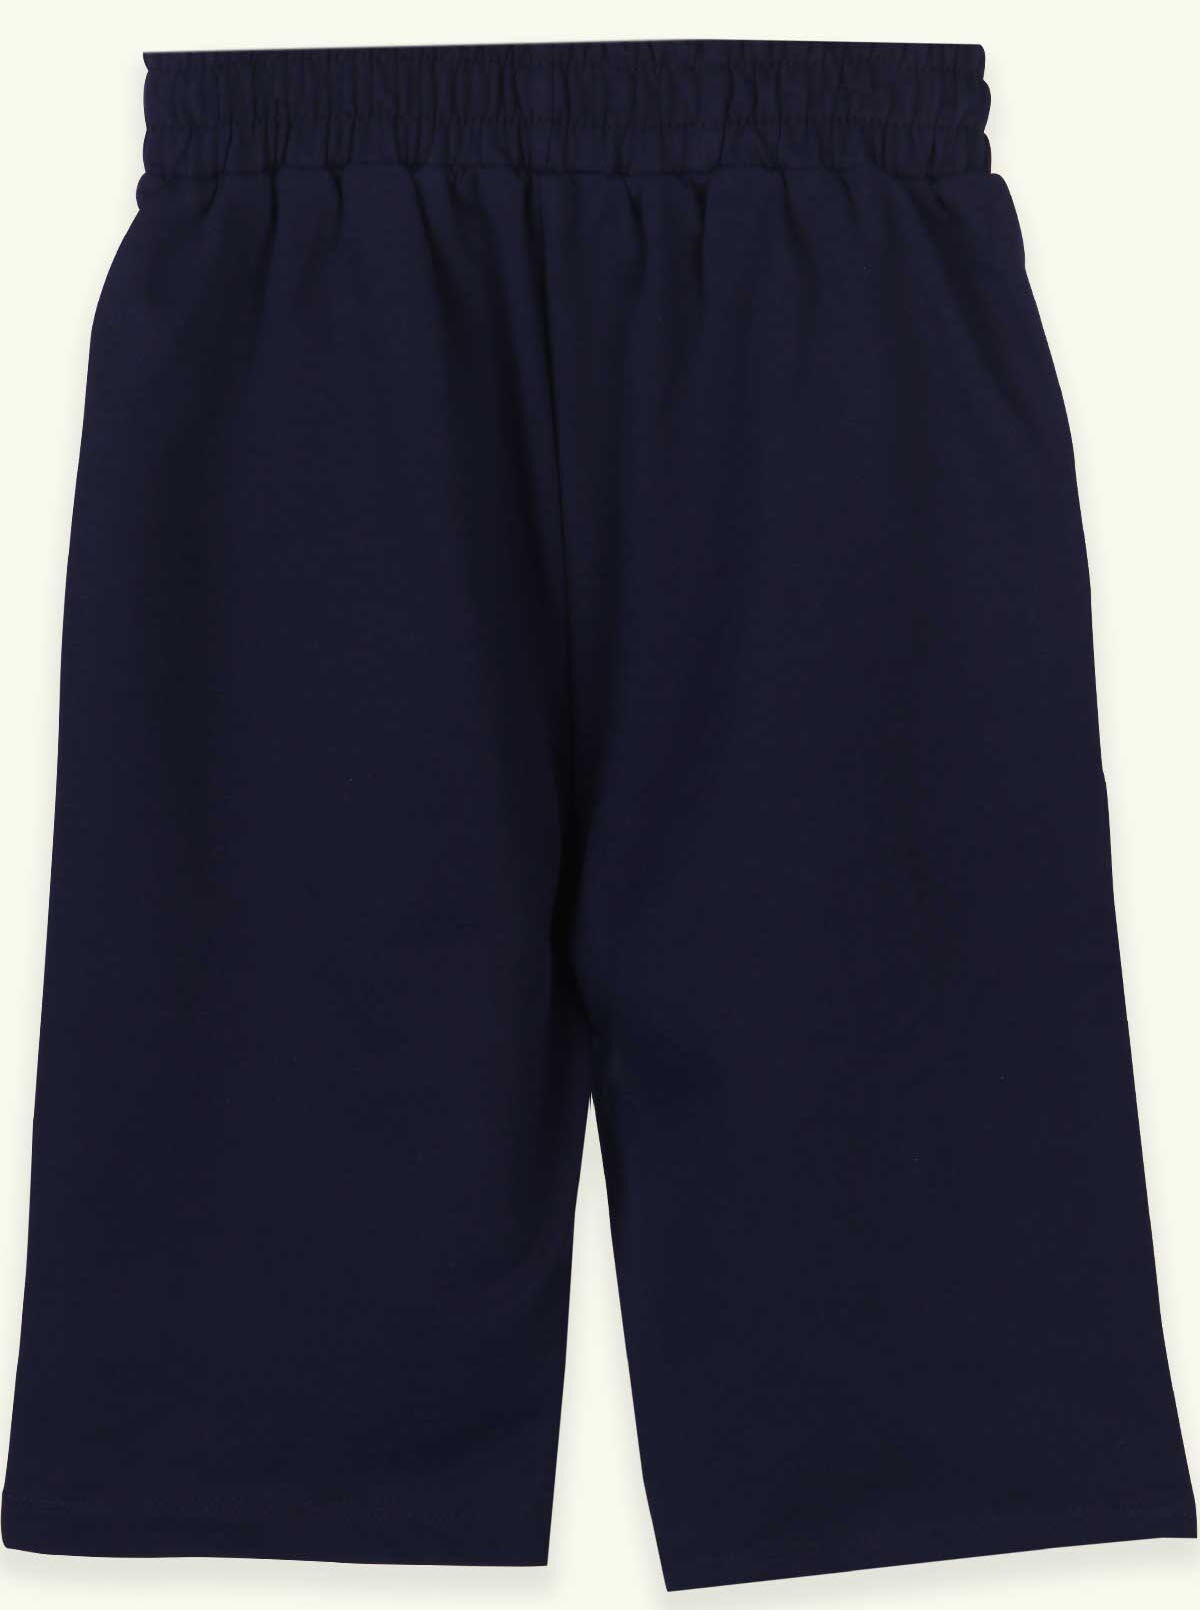 Трикотажные шорты для мальчика Breeze темно-синие 15718 - размеры